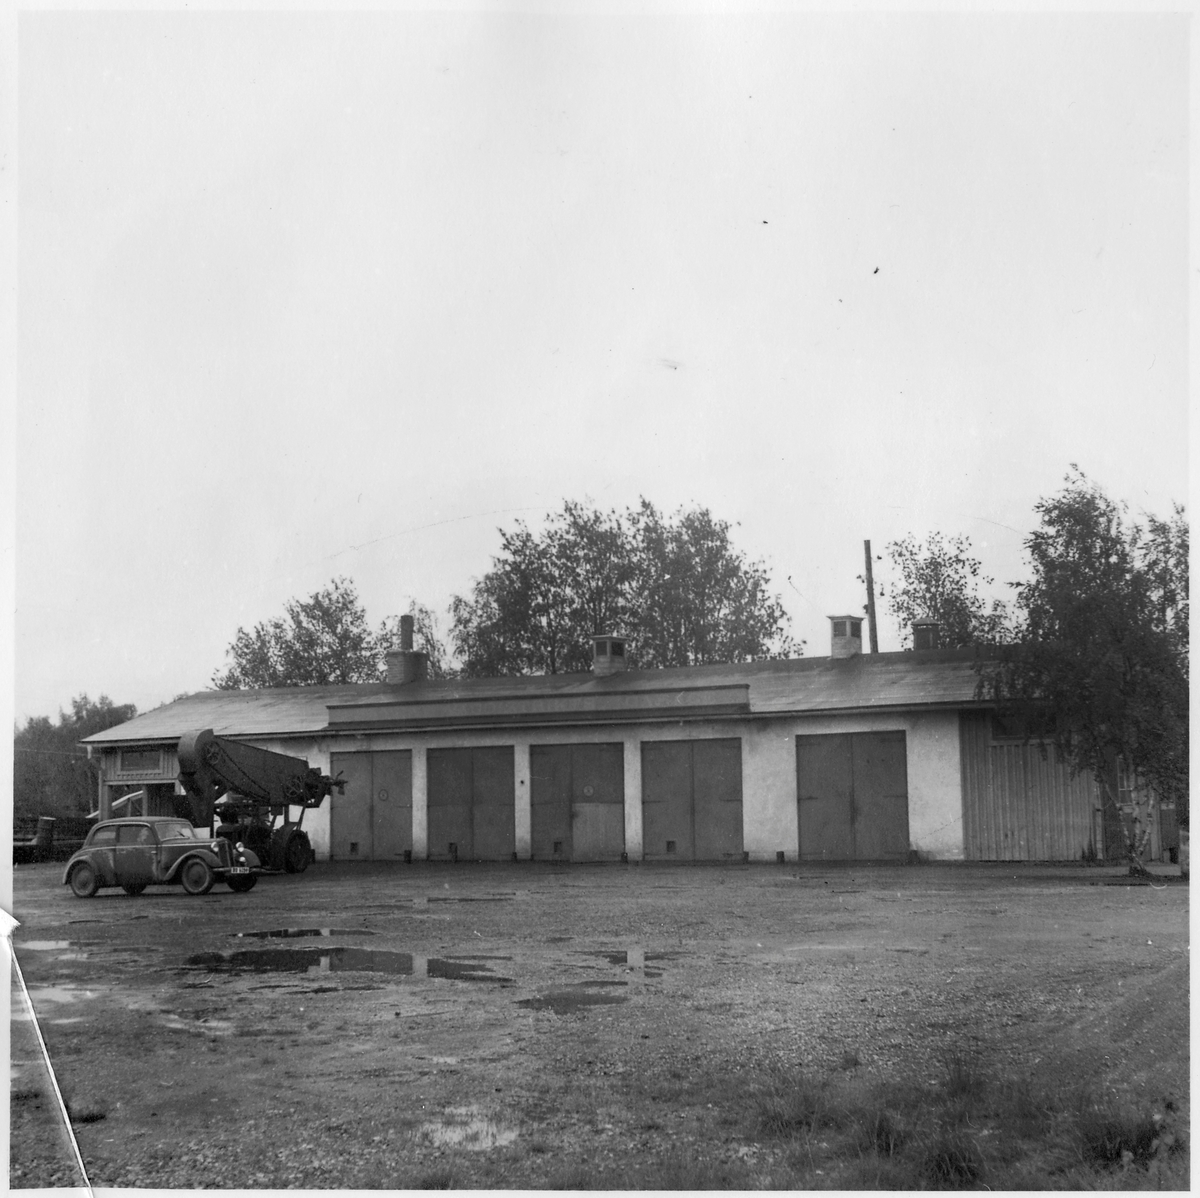 Vägstation BD6, Råneå. Garagebyggnad. Framför byggnaden lastningselevator (skopelevator) monterad på traktor, troligen tillverkad av Svedala. Personbil.